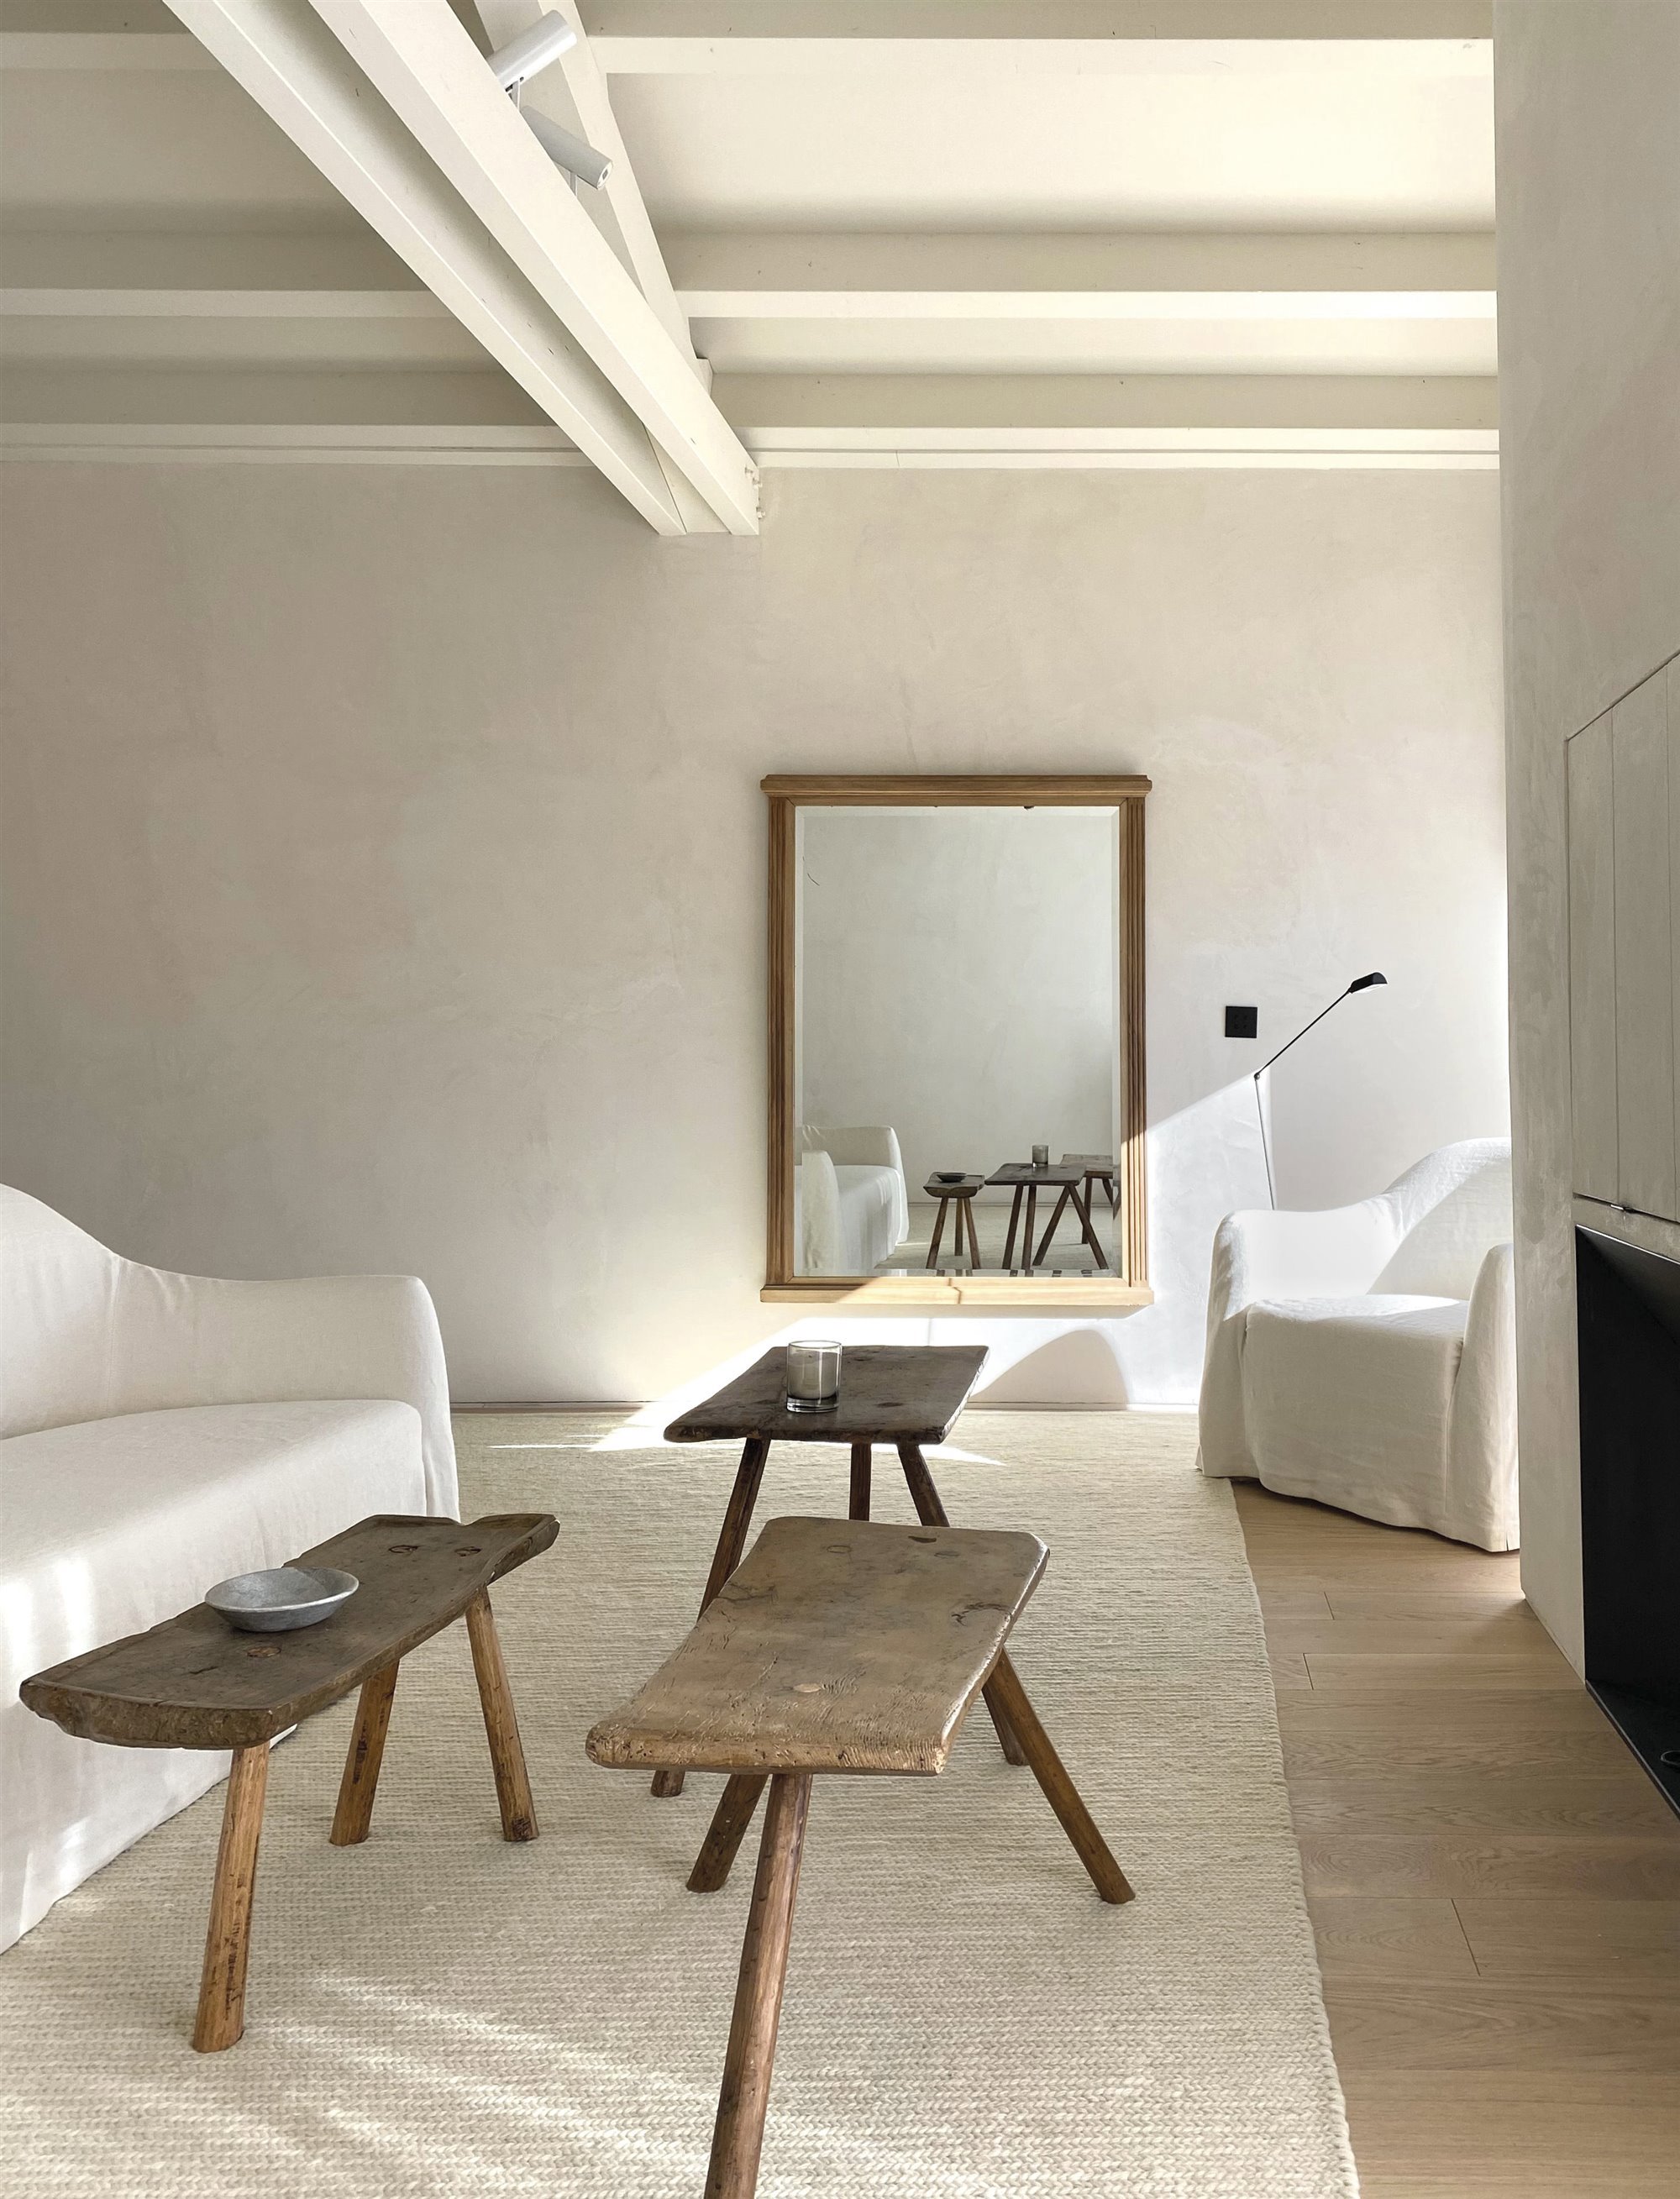 El estudio madrileño Las Perelli firma el diseño de interiores de esta casa de nueva planta situada en un pueblo de Segovia